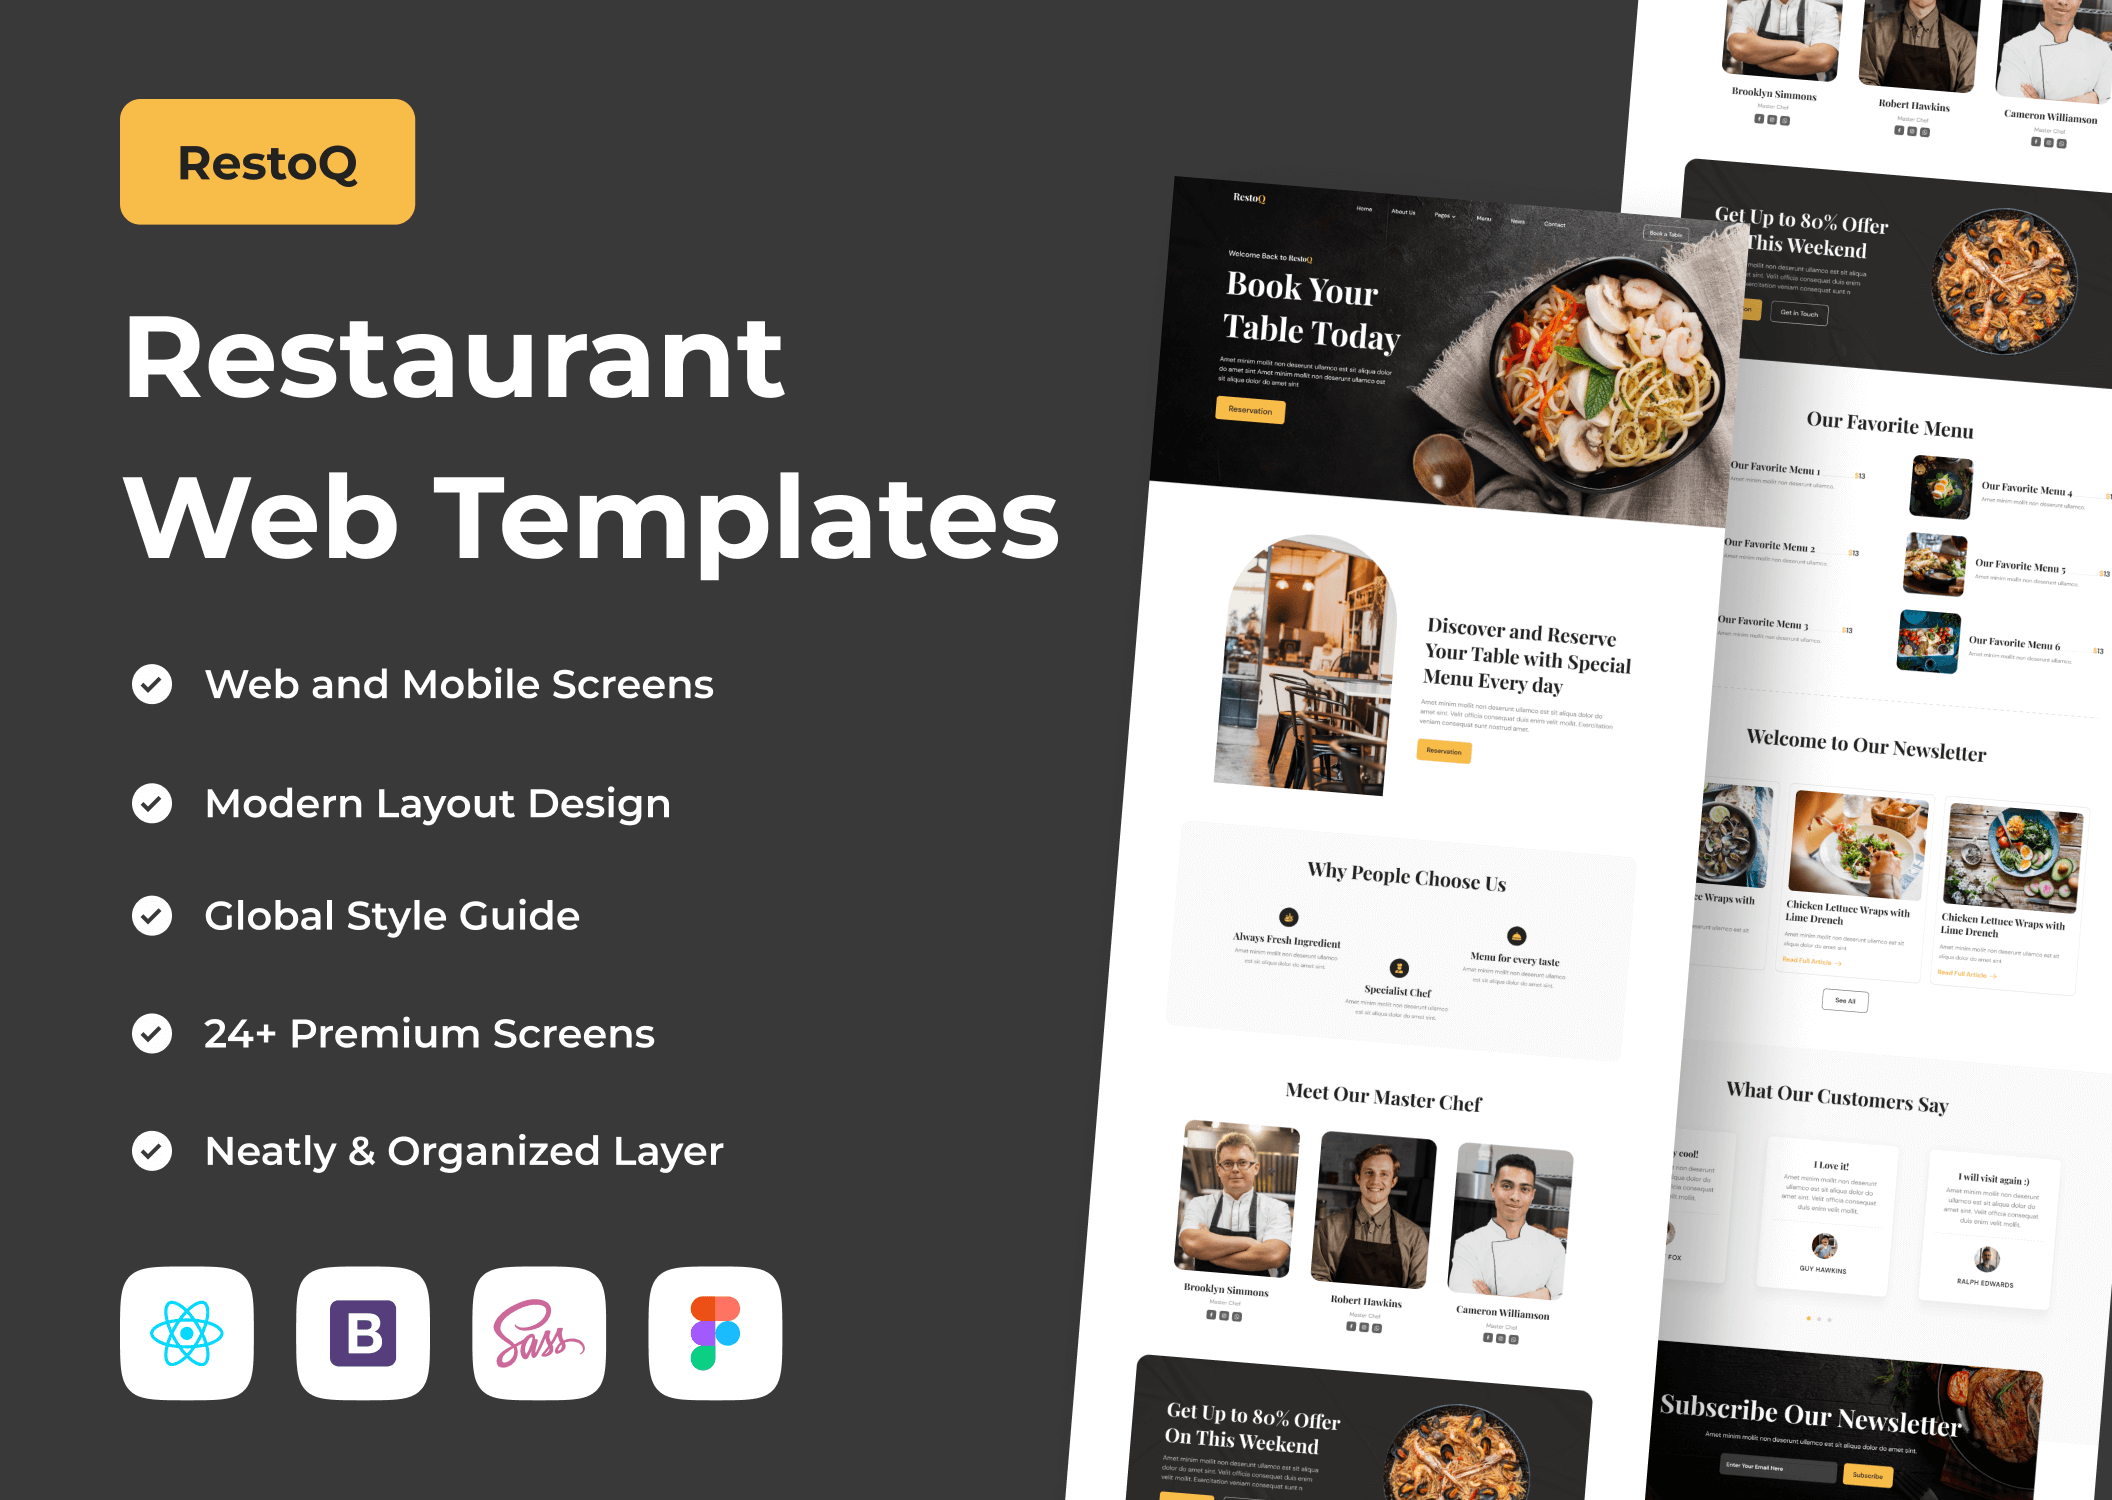 餐厅网络模板素材下载RestoQ – Restaurant Web Templates插图8